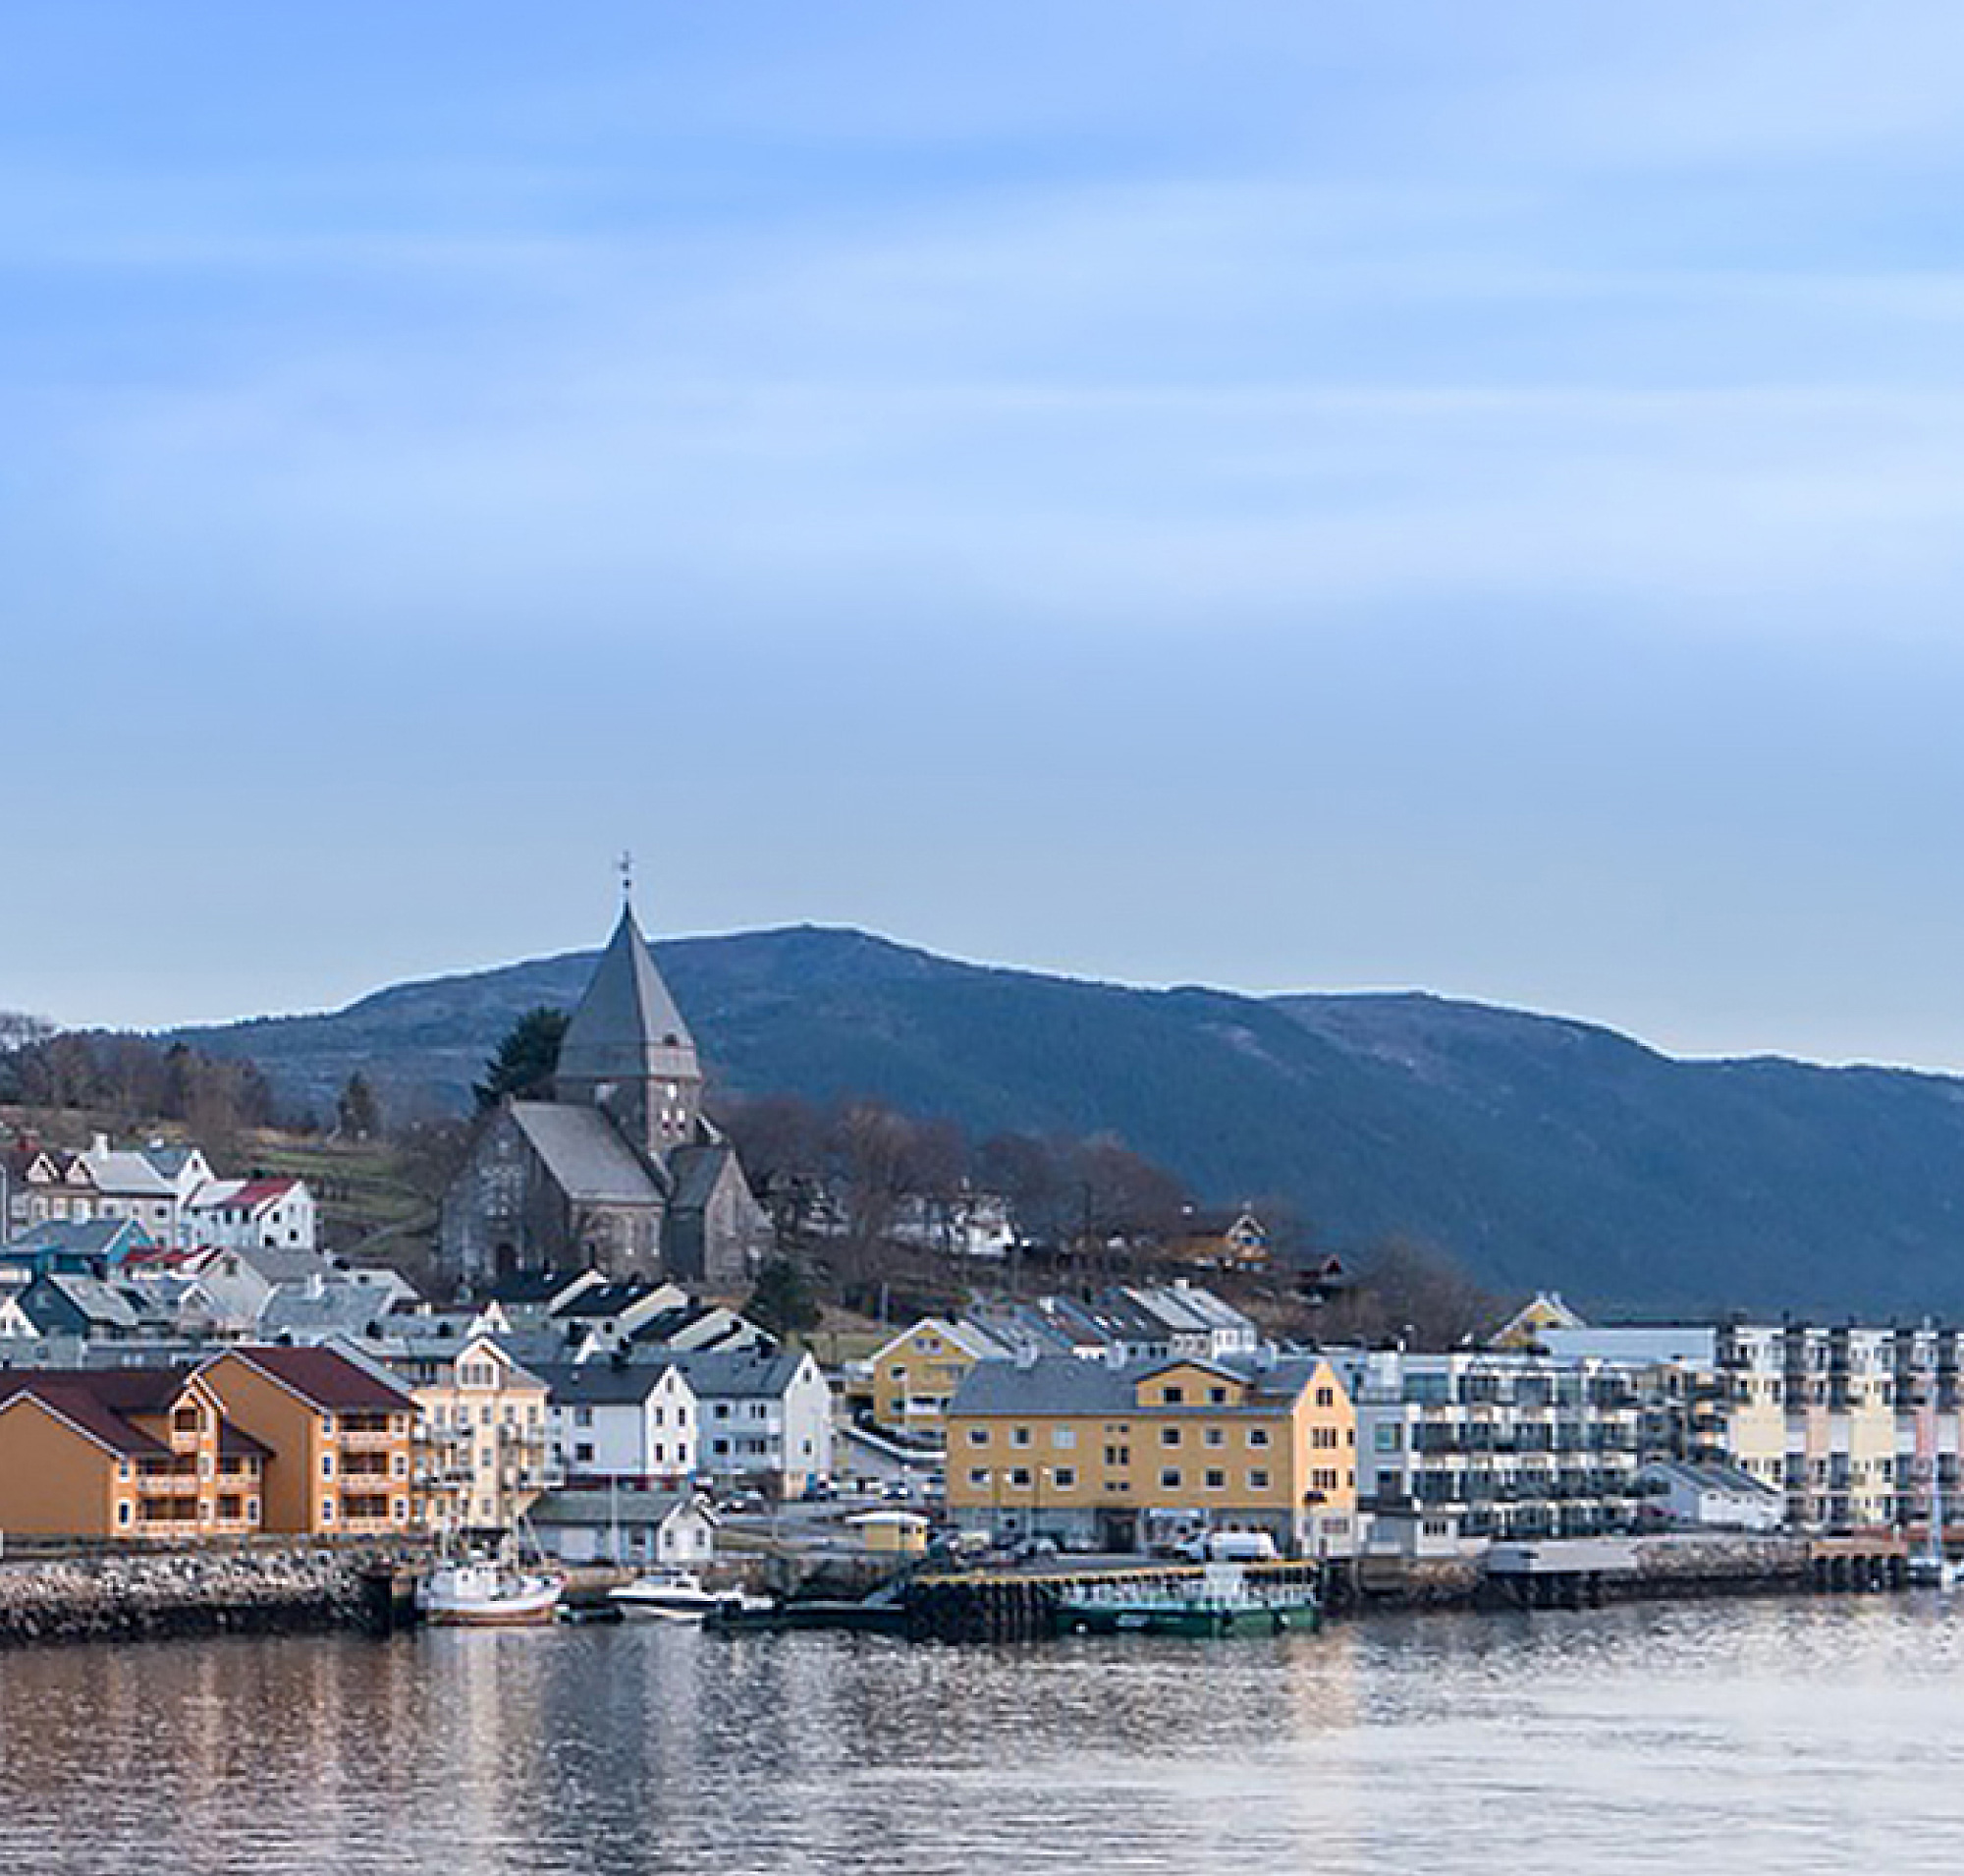 Una vista panorámica de una ciudad noruega con edificios coloridos y un lugar destacado, situado frente a un fondo de montañas 